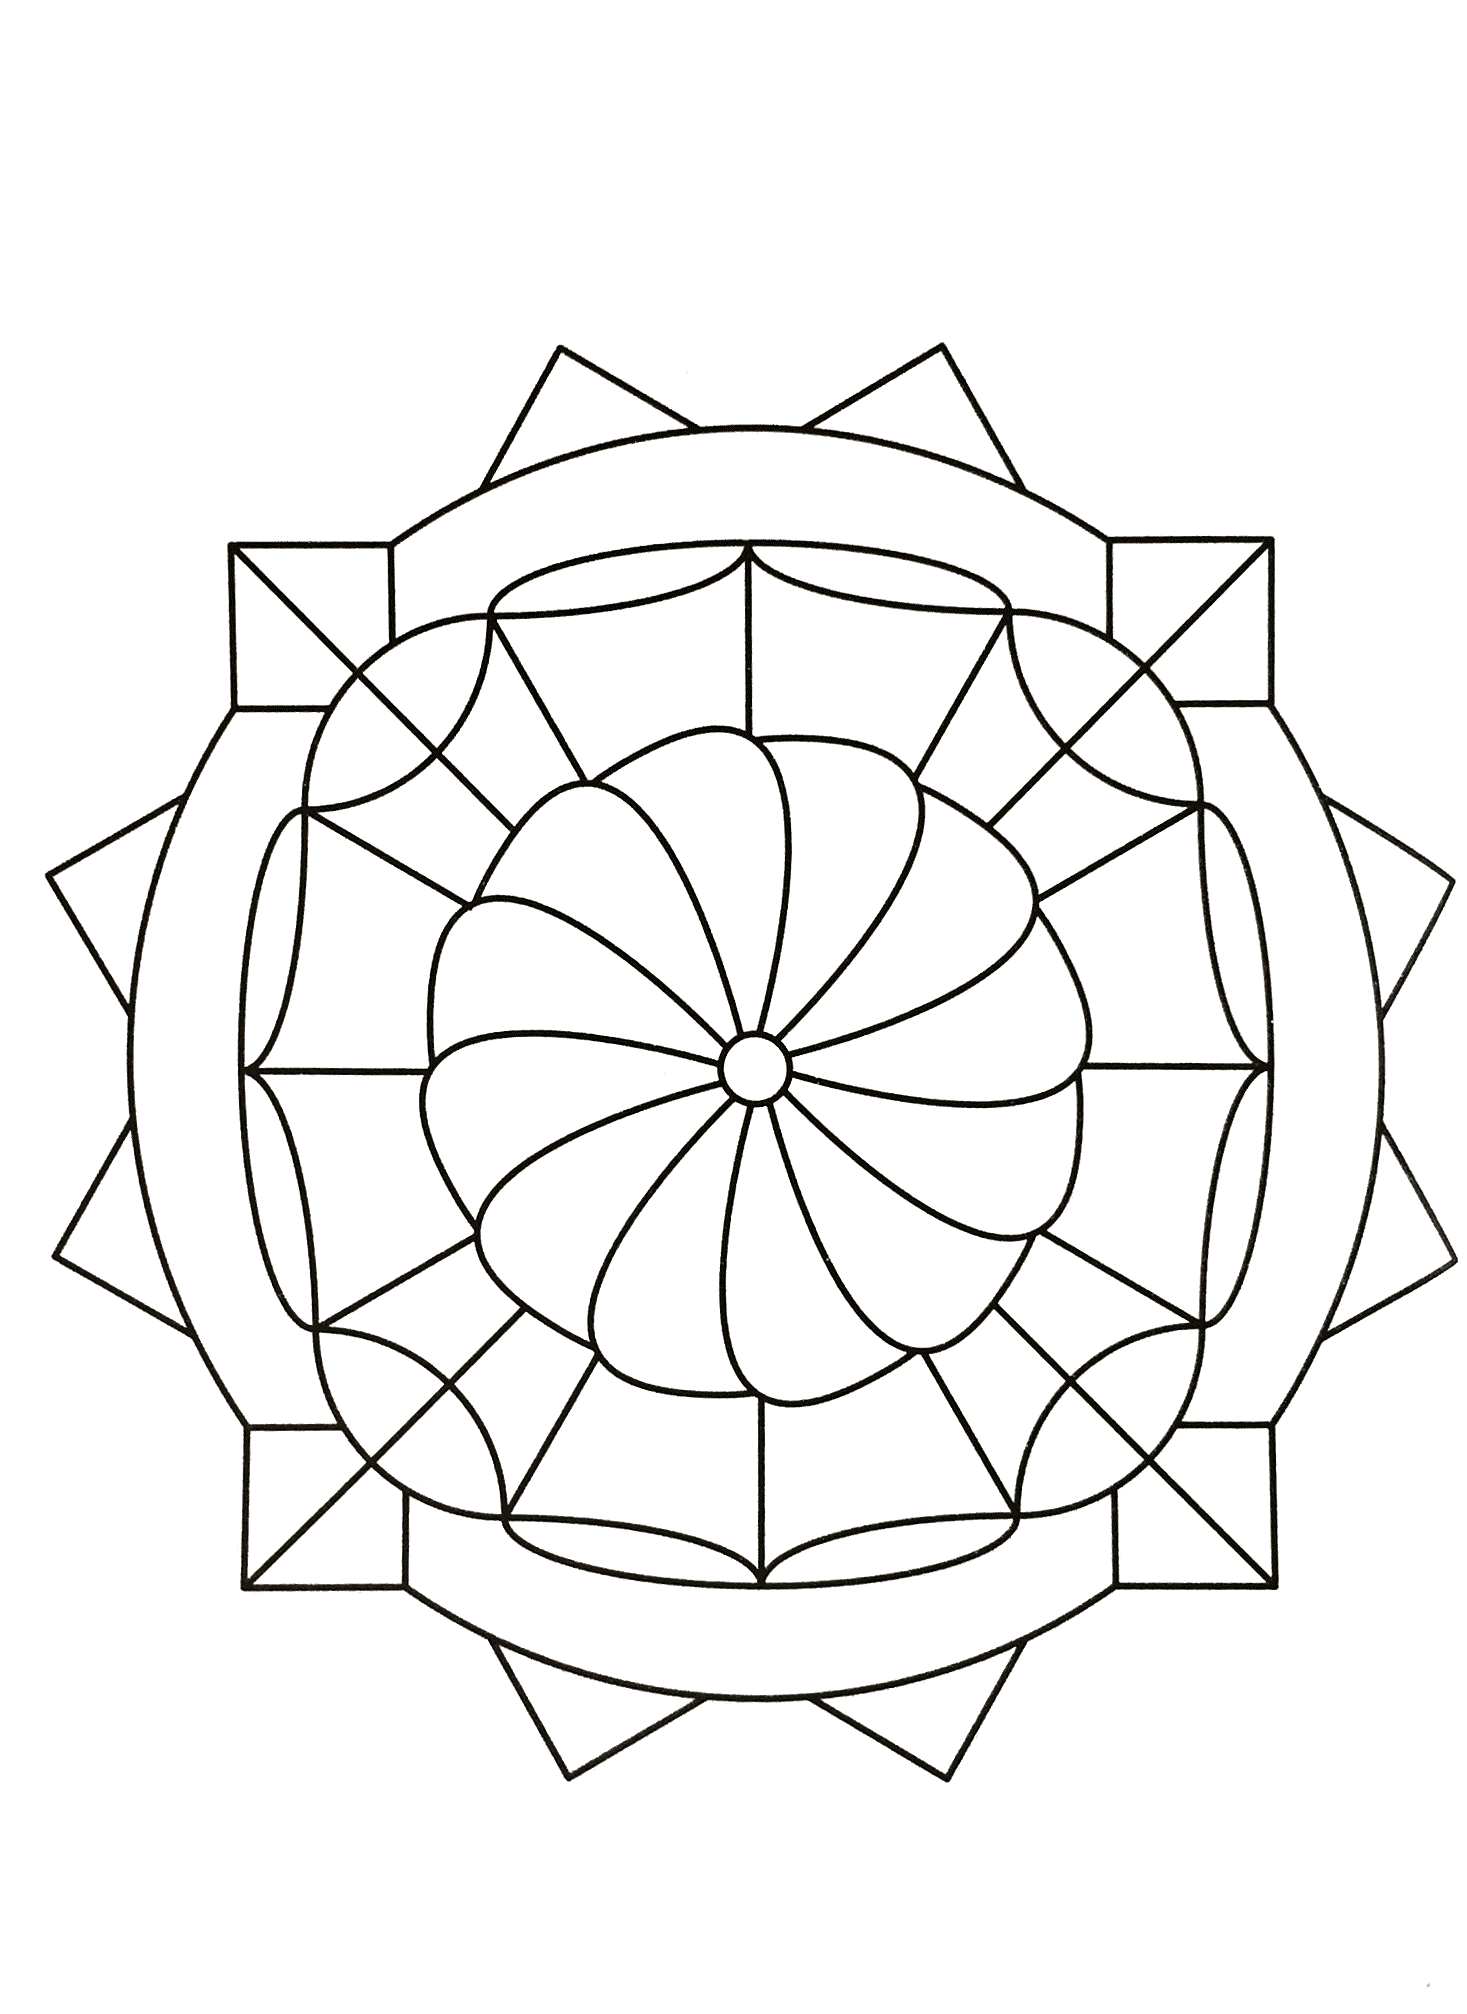 Erhabenes symmetrisches Mandala mit einer sehr schönen Form, die den Eindruck einer wunderschönen Blume vermittelt. Sehr einfach auszumalen.